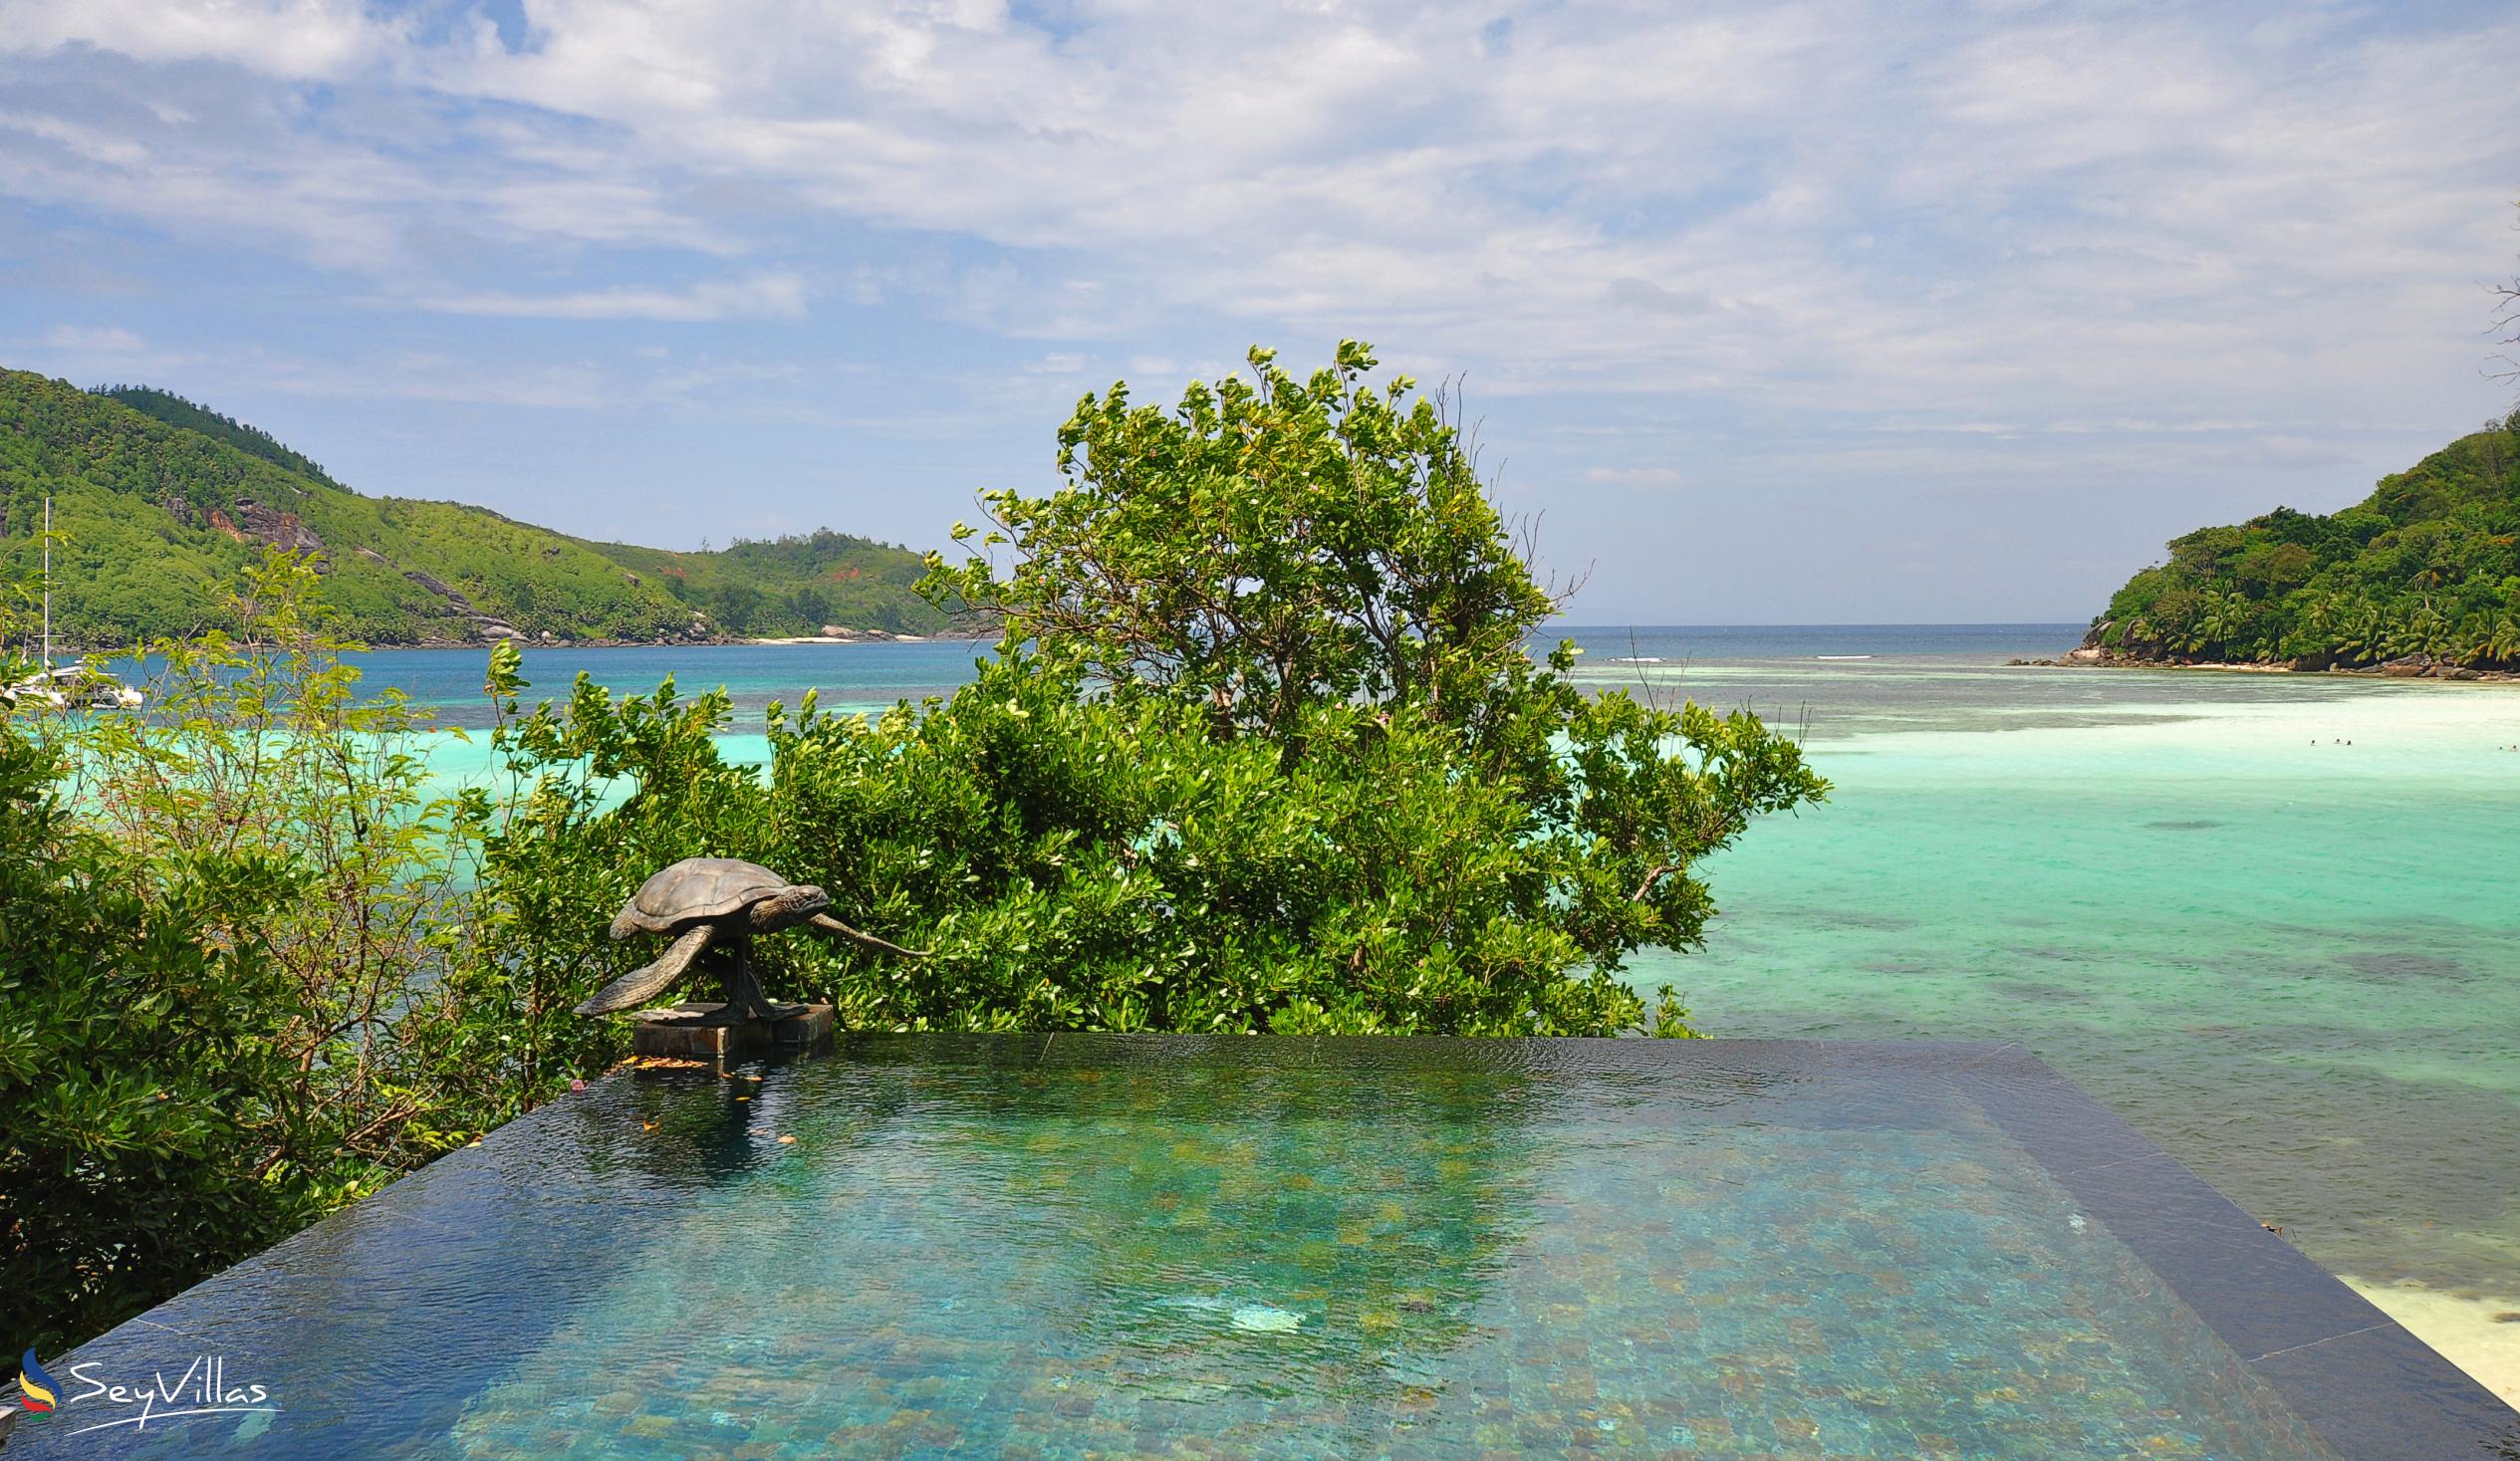 Foto 43: JA Enchanted Island Resort - Innenbereich - Round Island (Seychellen)